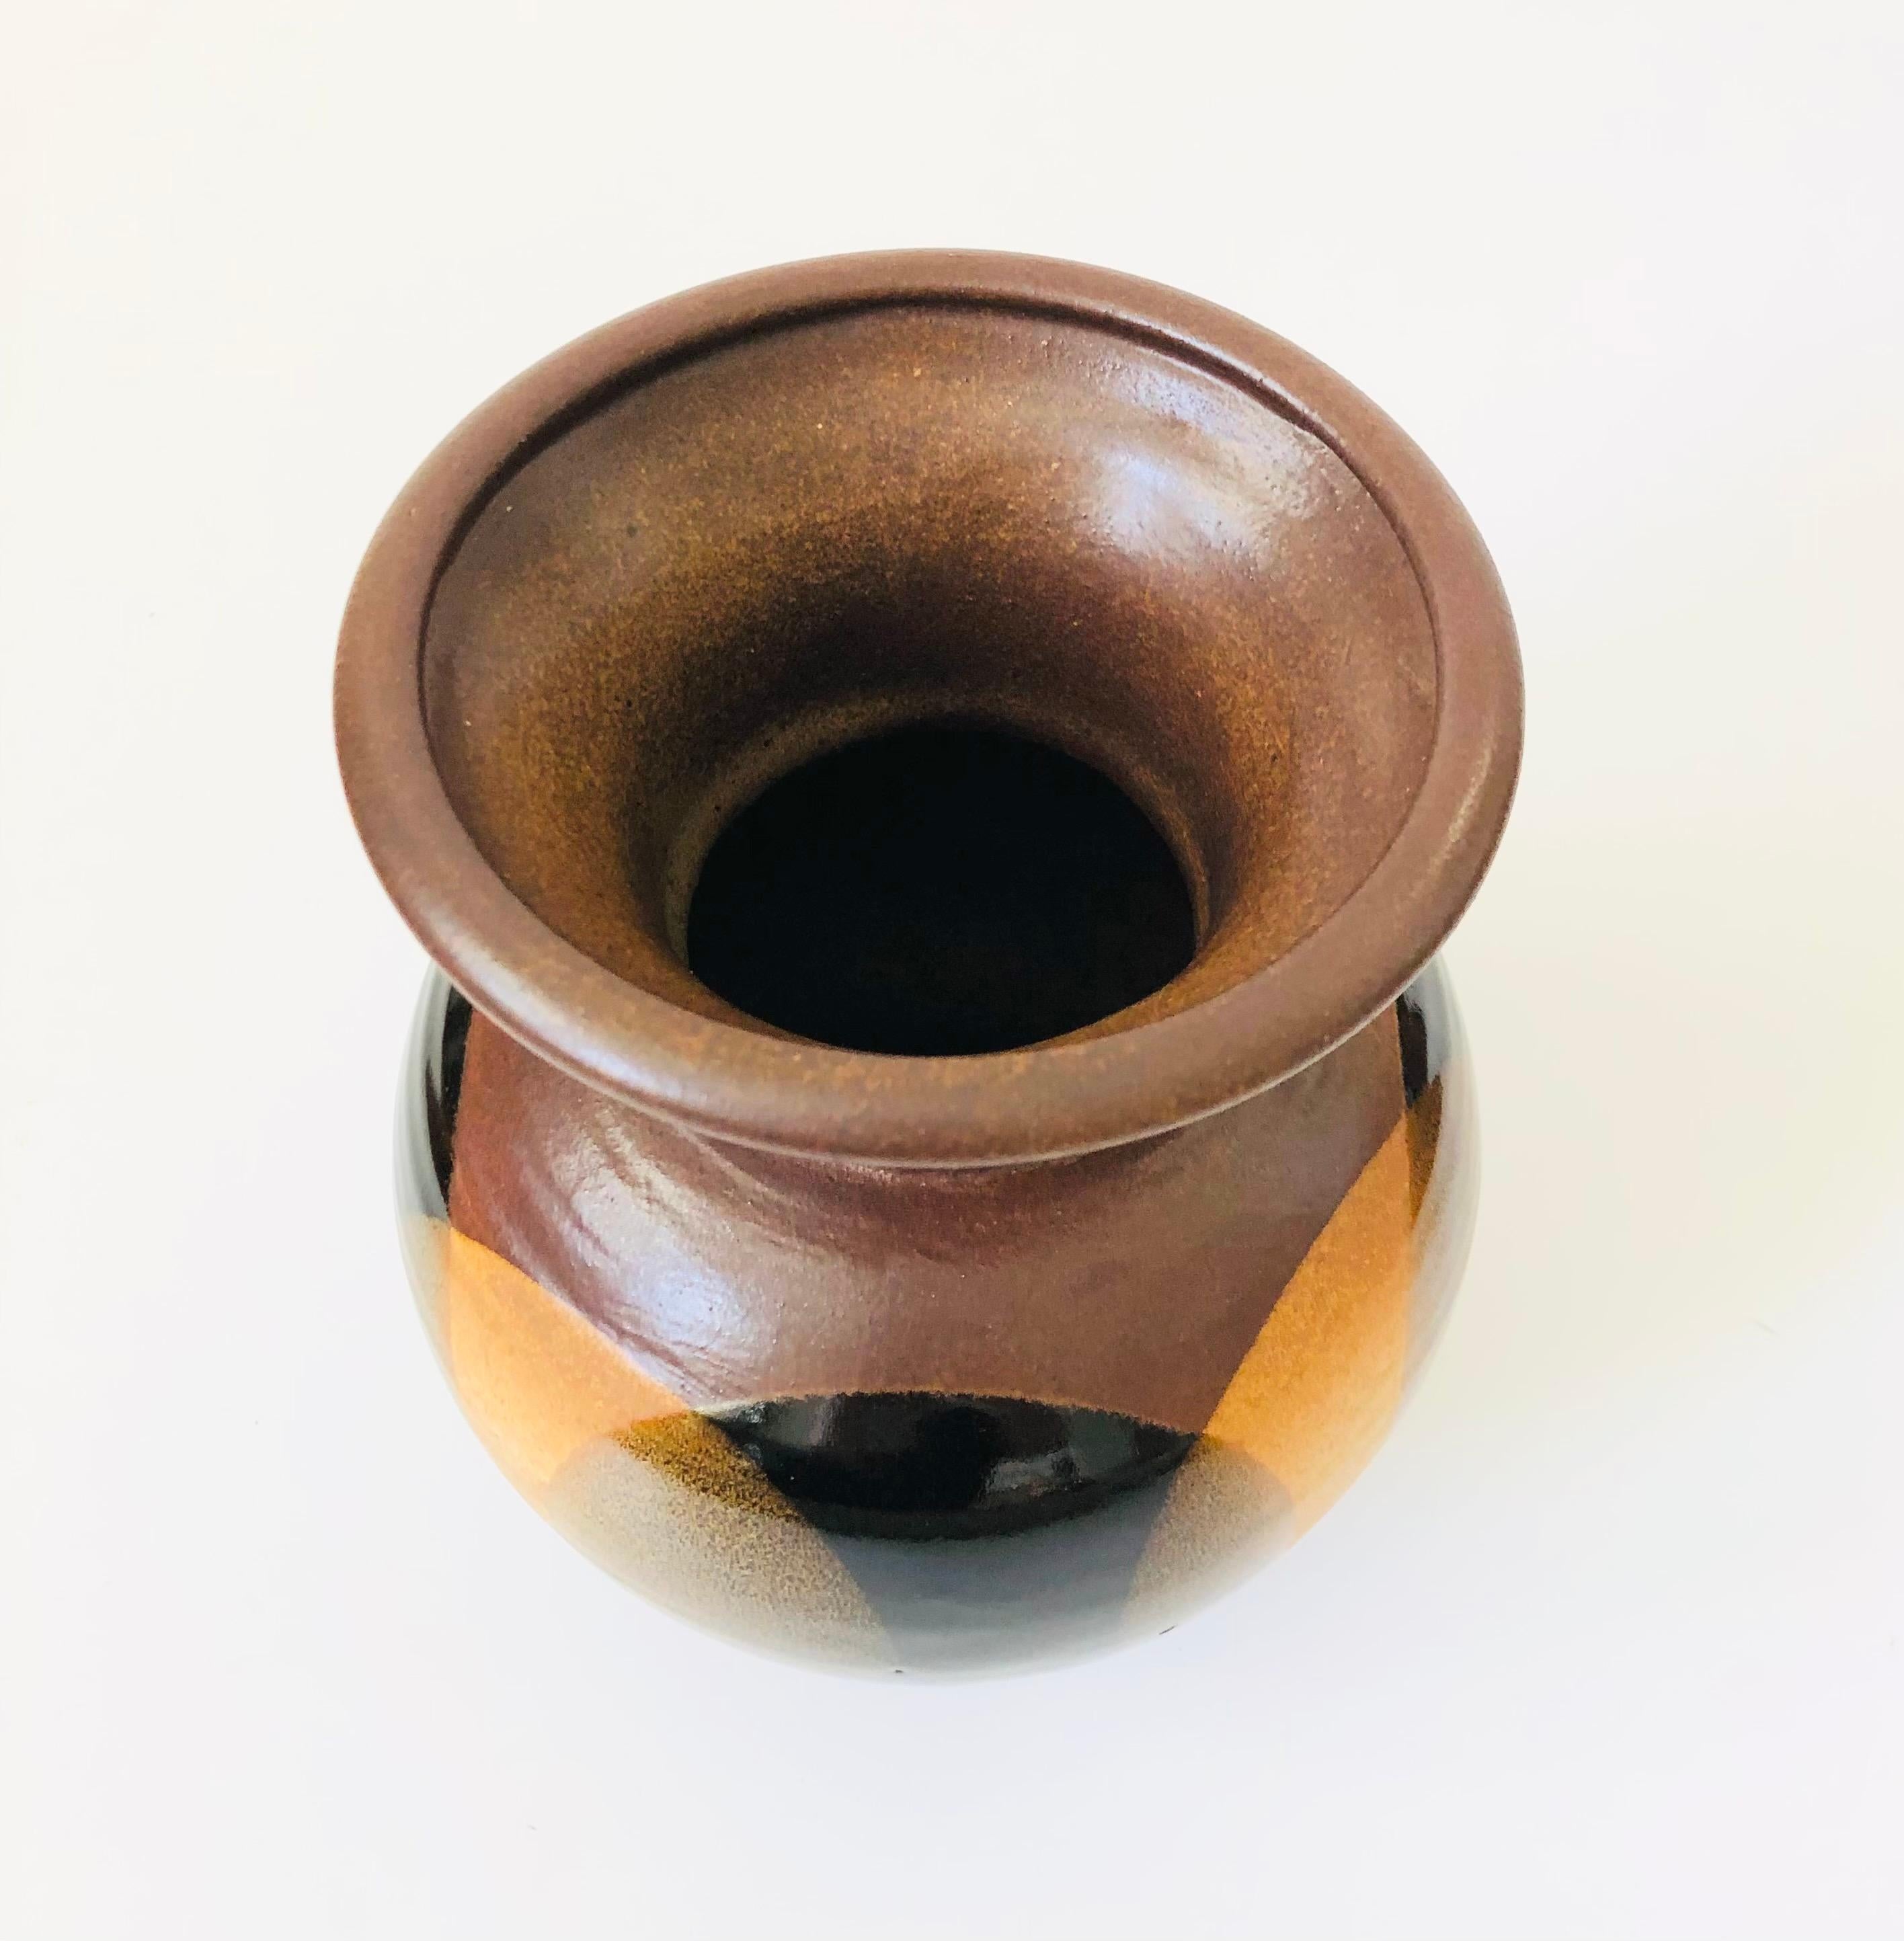 Magnifique vase du milieu du siècle conçu par Robert Maxwell pour Pottery Craft. La glaçure est ornée d'un motif de cercles superposés en brun et noir.

